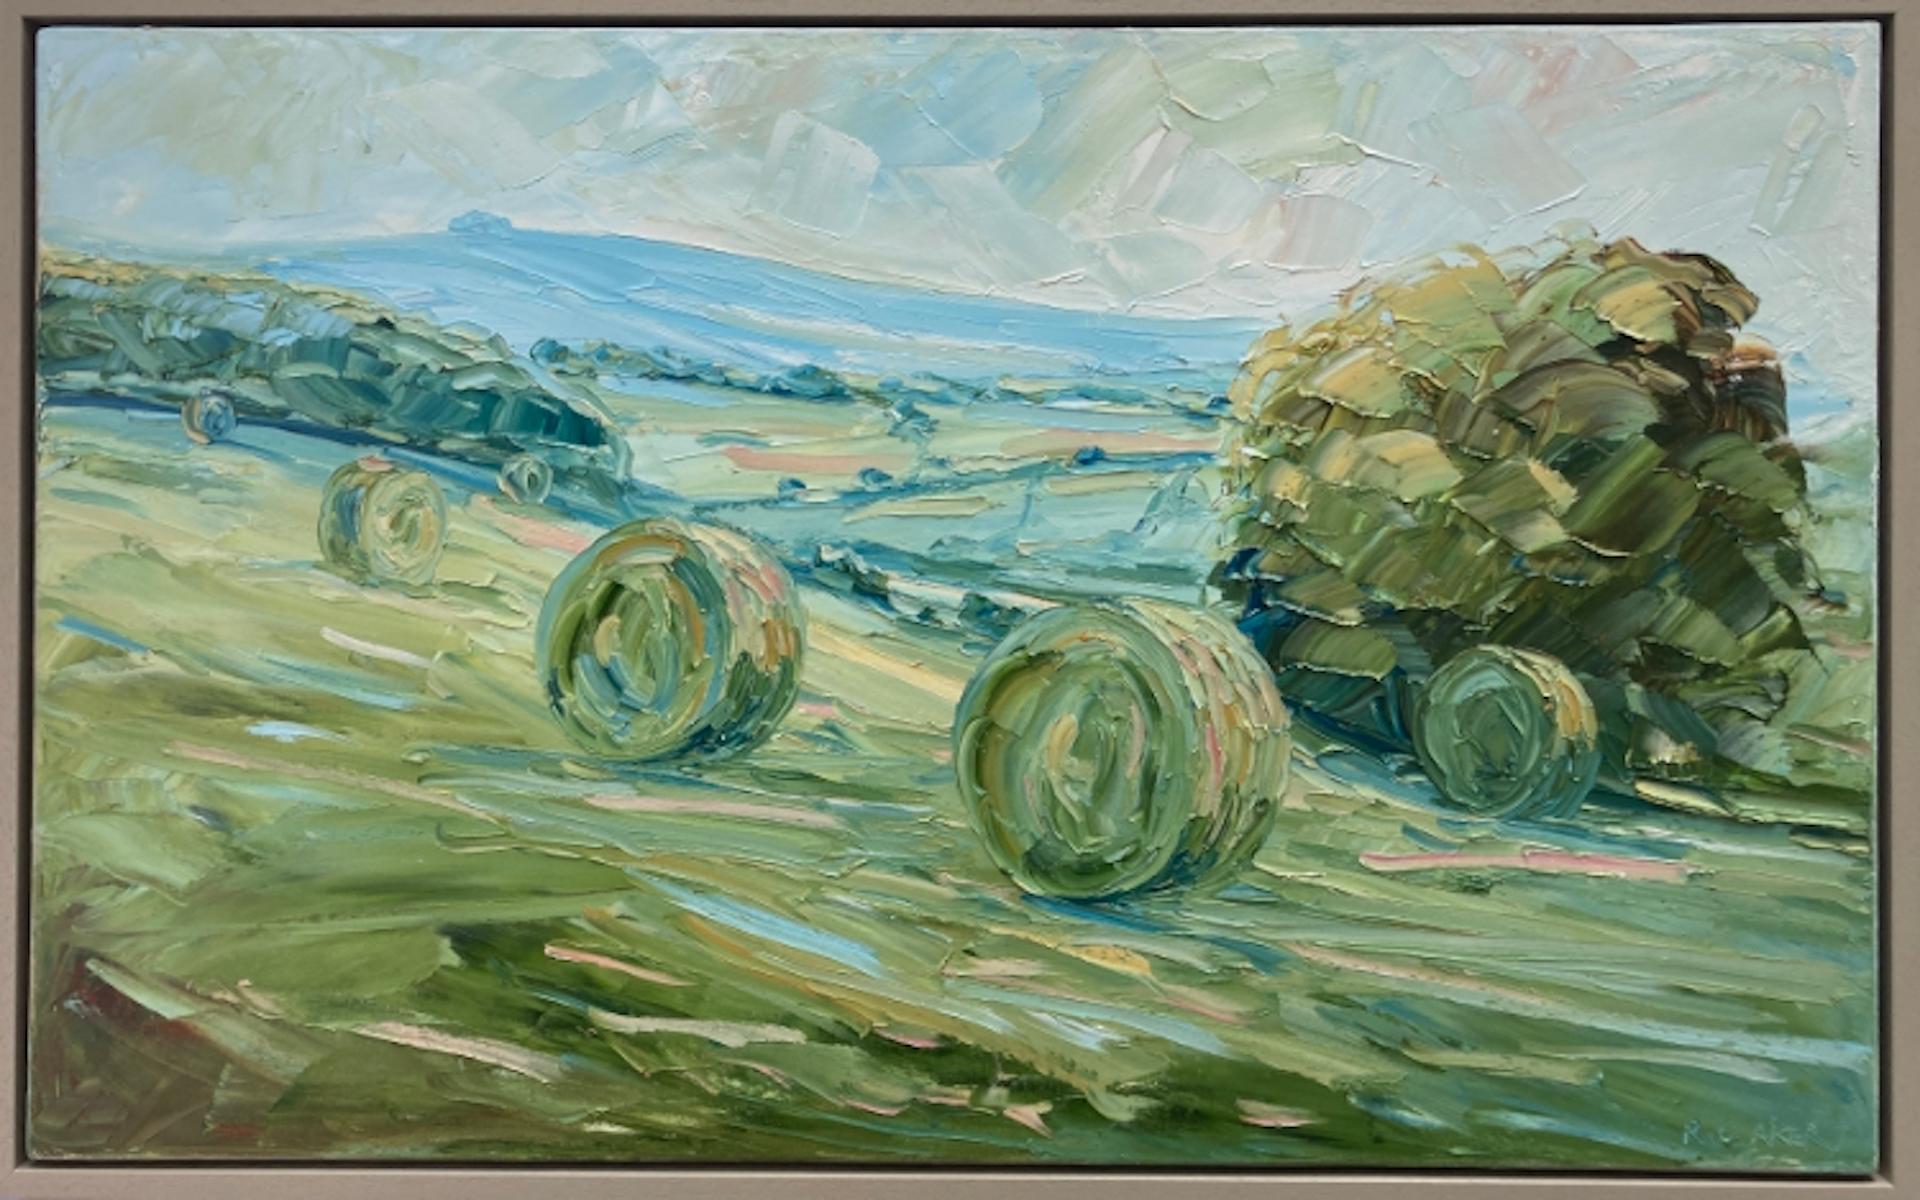 May Hill von Rupert Aker, Zeitgenössische Kunst, Ölgemälde, Landschaftskunst.  (Impressionismus), Painting, von Rupert Aker 